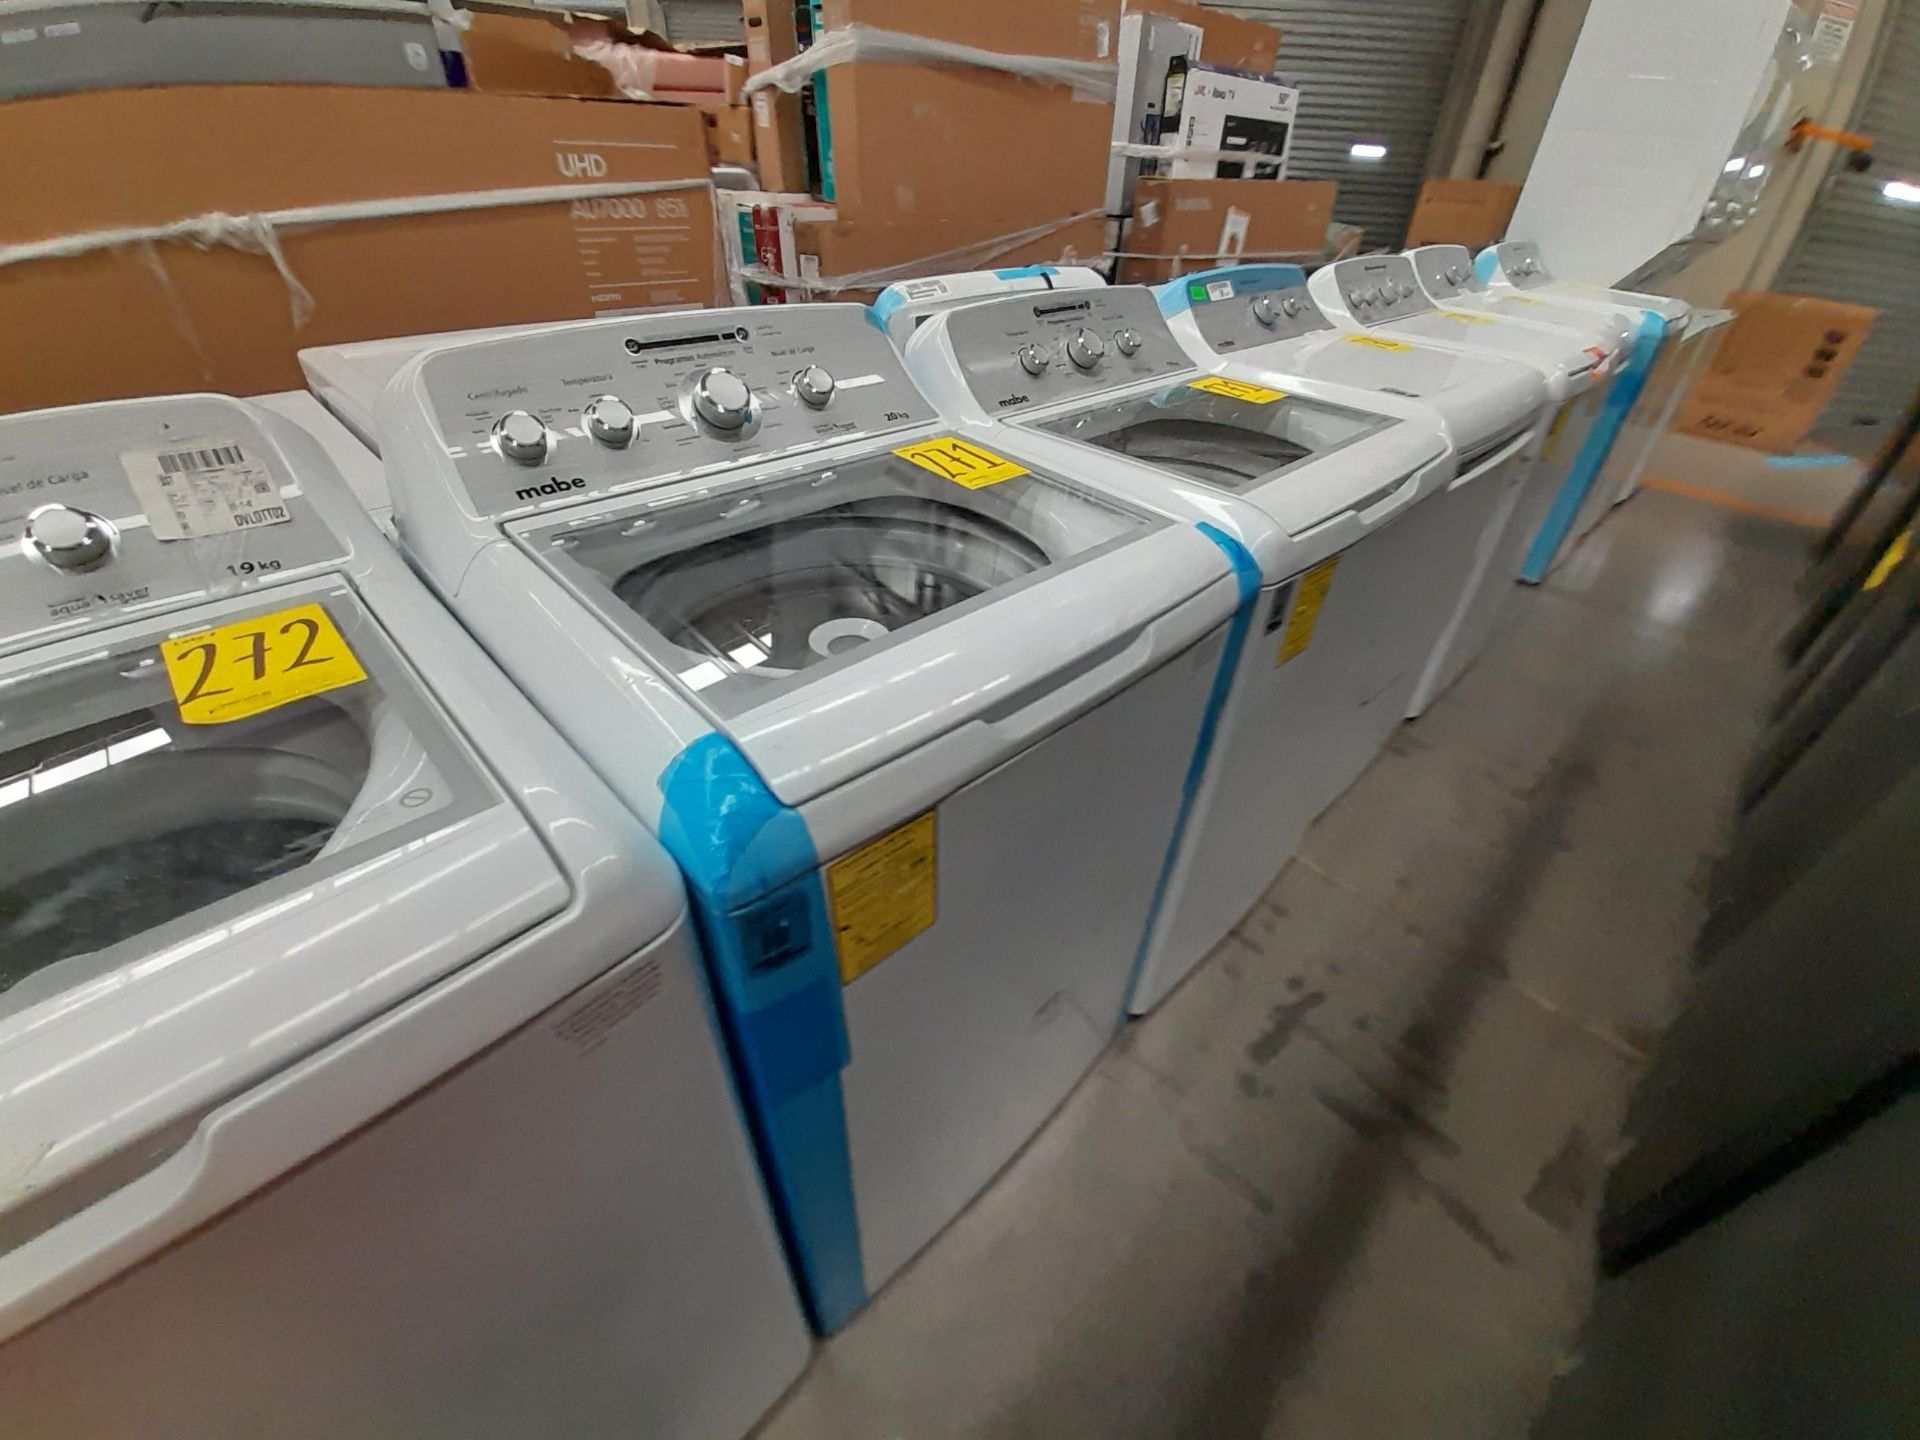 Lote de 2 lavadoras Contiene: 1 lavadora de 20 KG, marca MABE, modelo LMA70214VBAB03, serie S12869, - Image 3 of 5